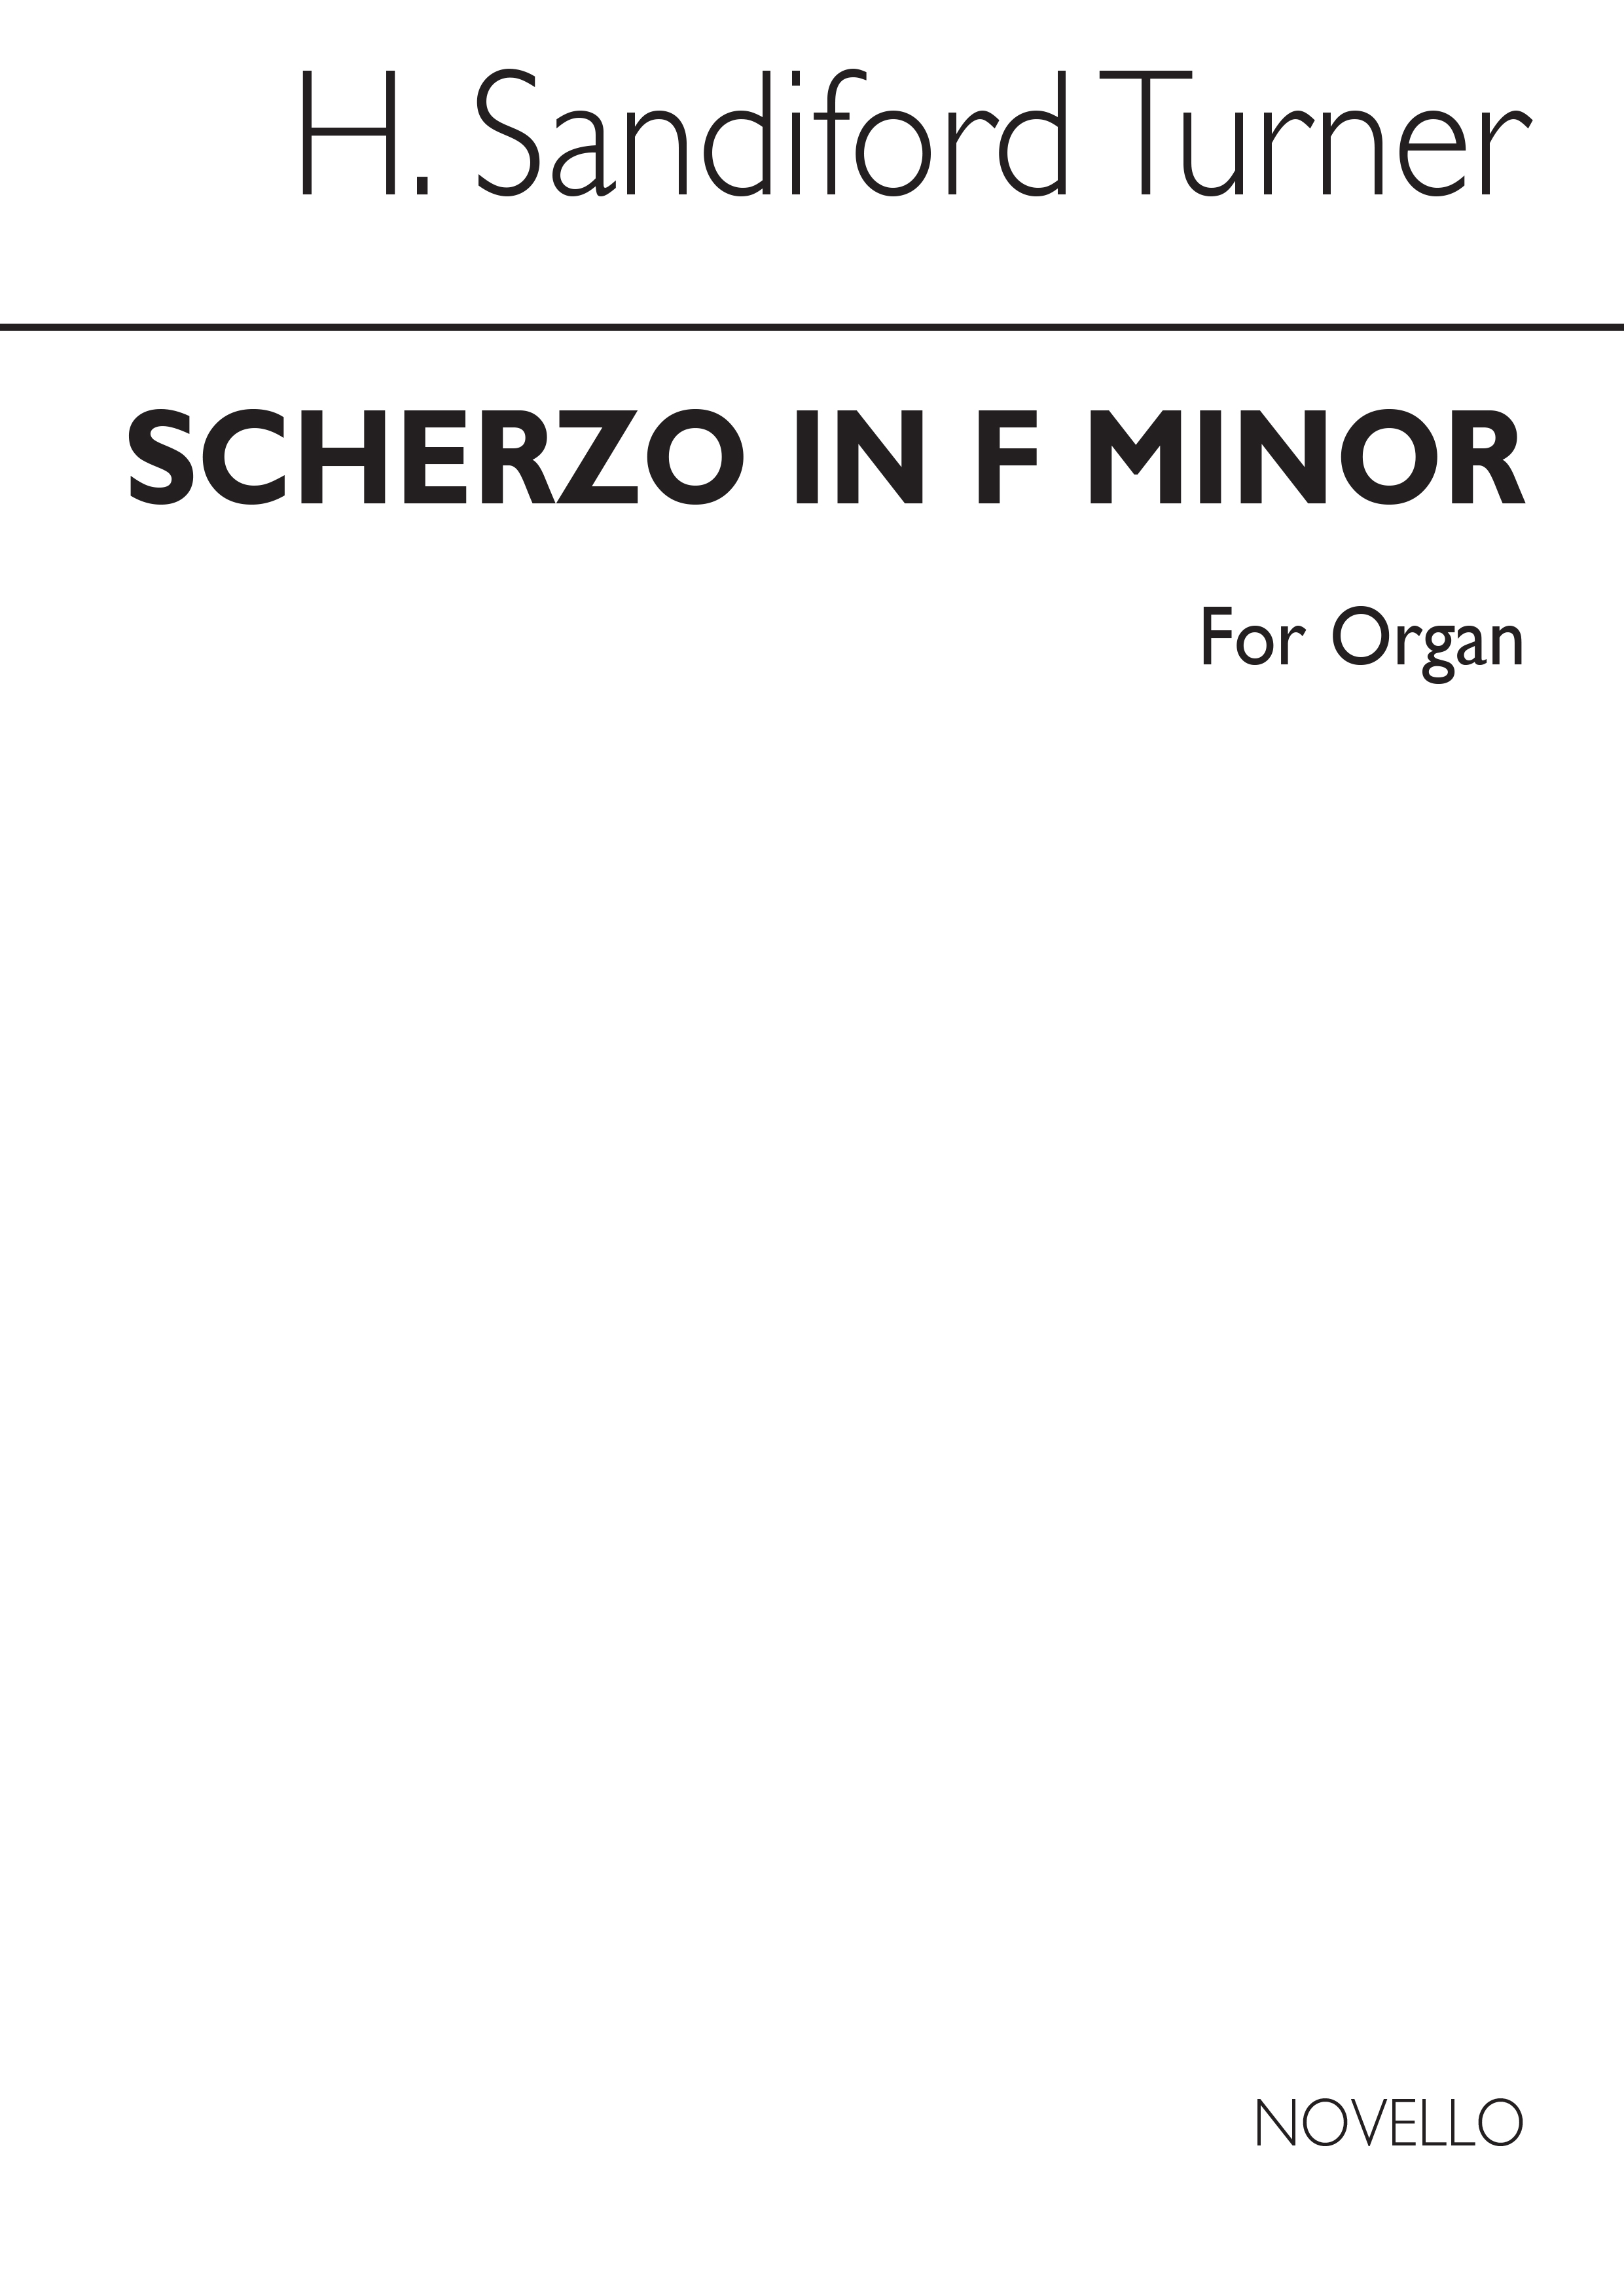 Harry Sandiford Turner: Scherzo In F Minor